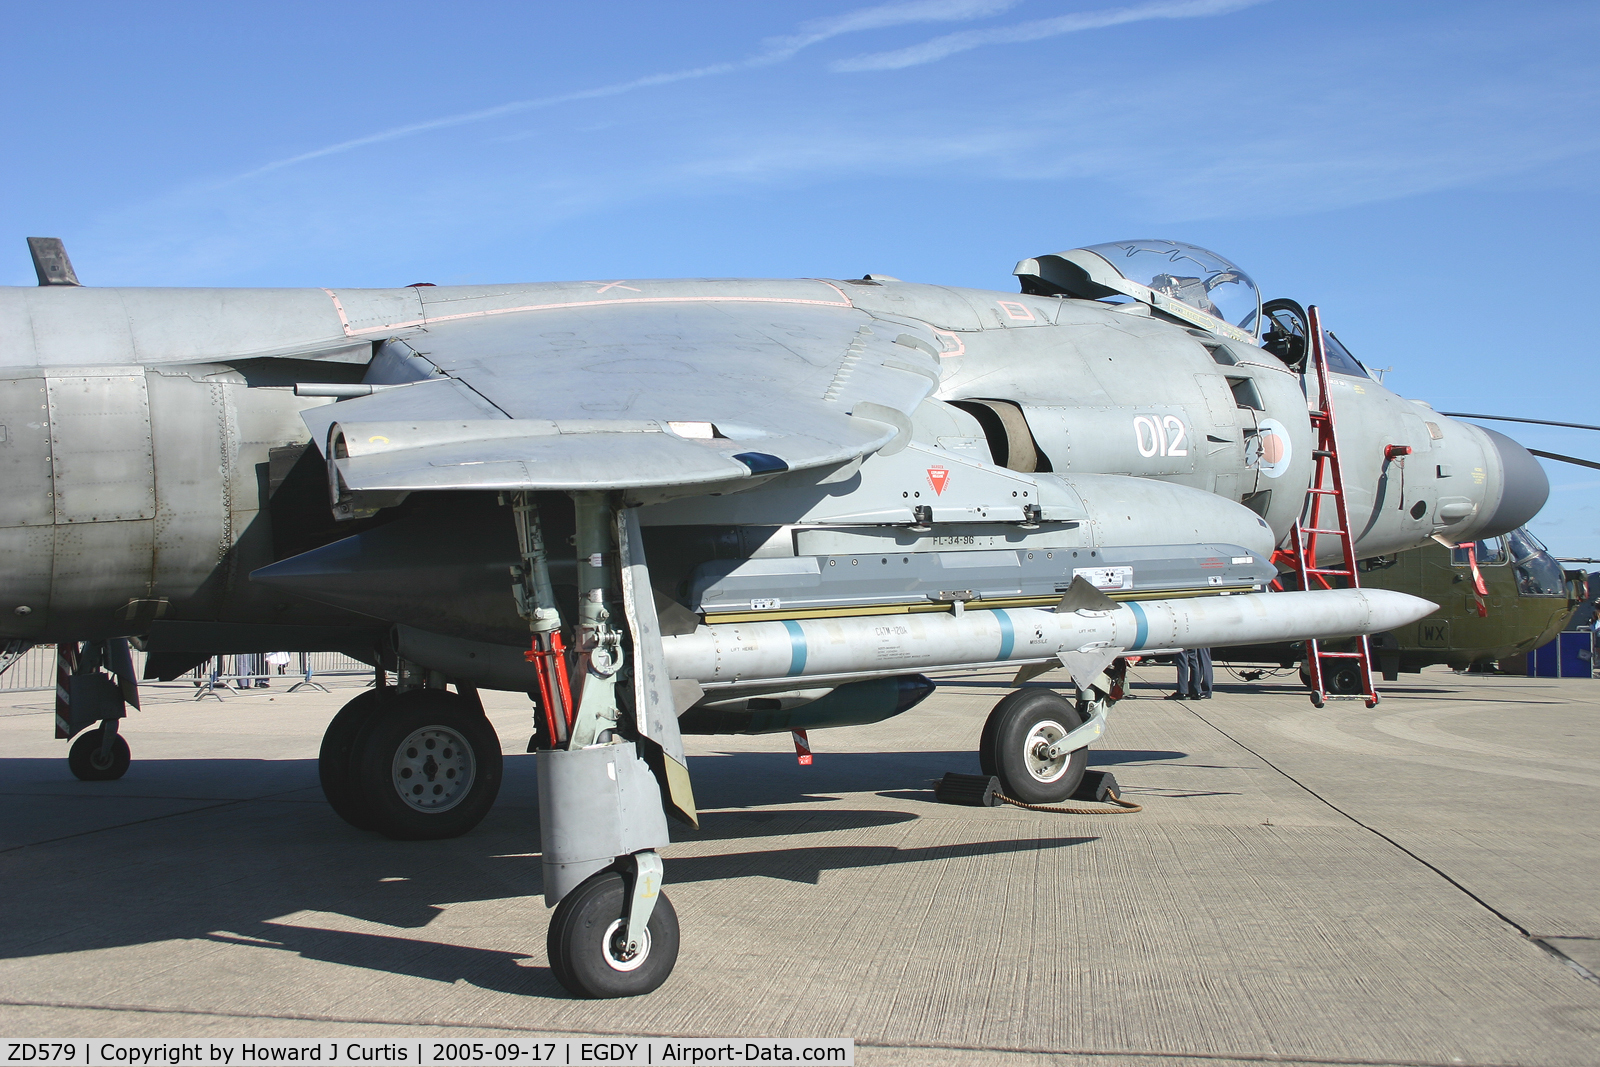 ZD579, 1985 British Aerospace Sea Harrier F/A.2 C/N 41H-912042/B36/P14, Coded 012.